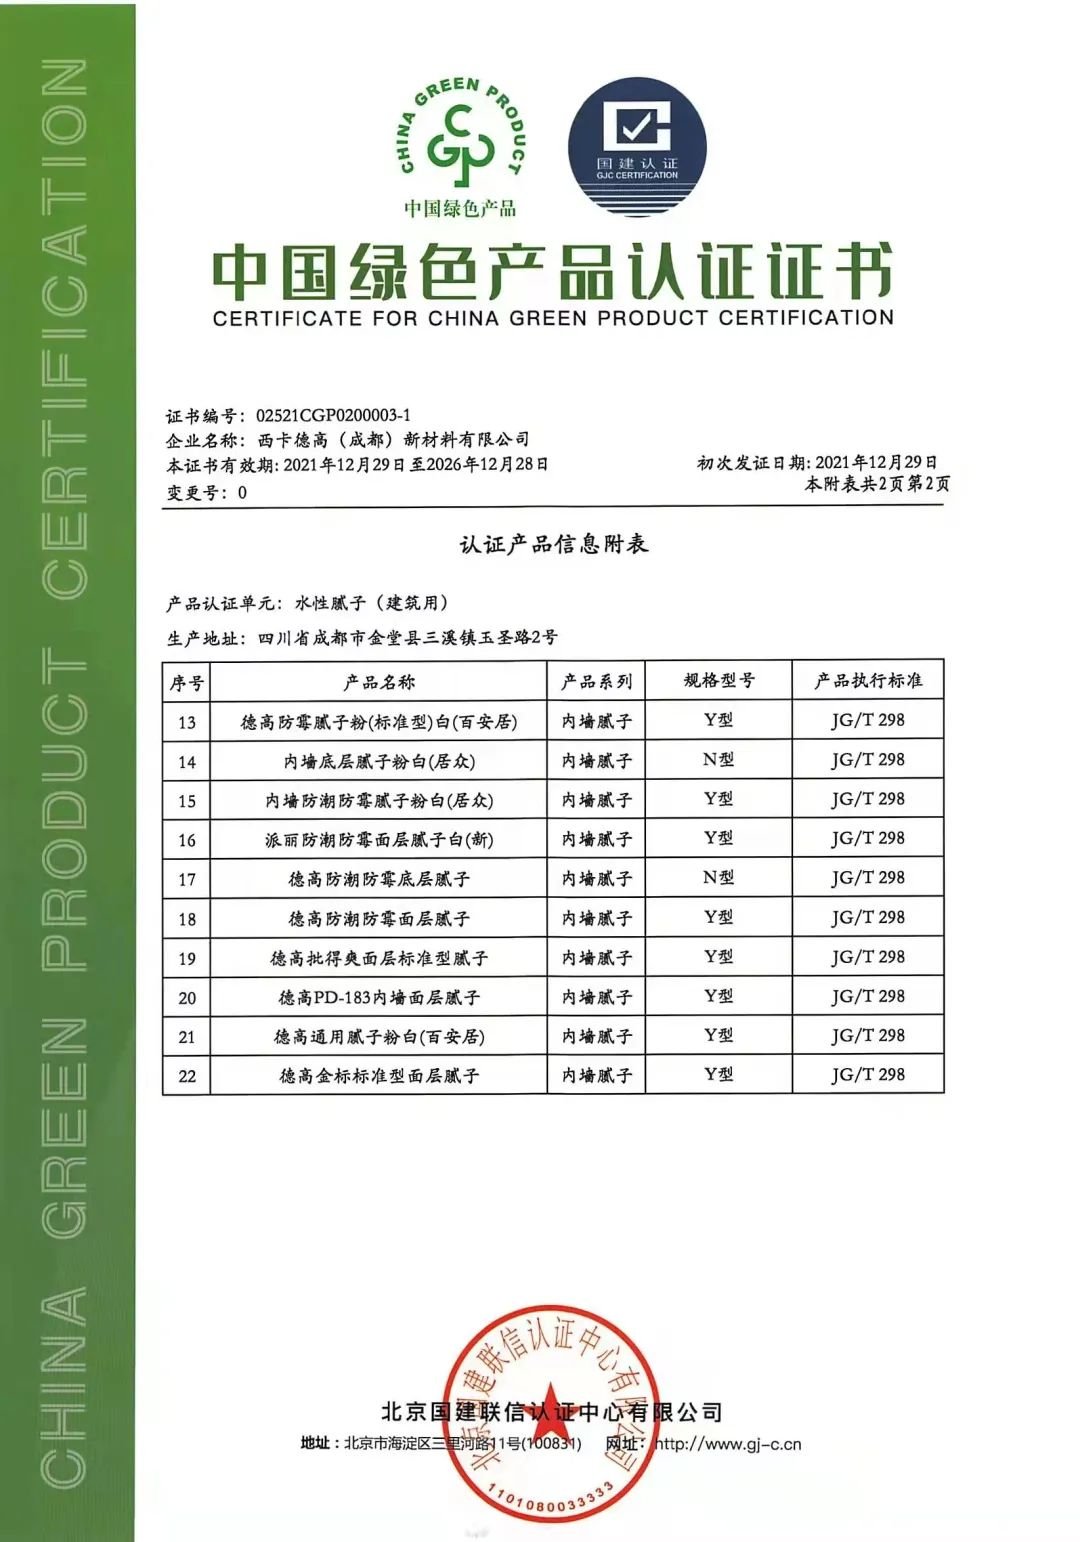 喜讯西卡德高旗下第一批工厂荣获中国绿色产品证书